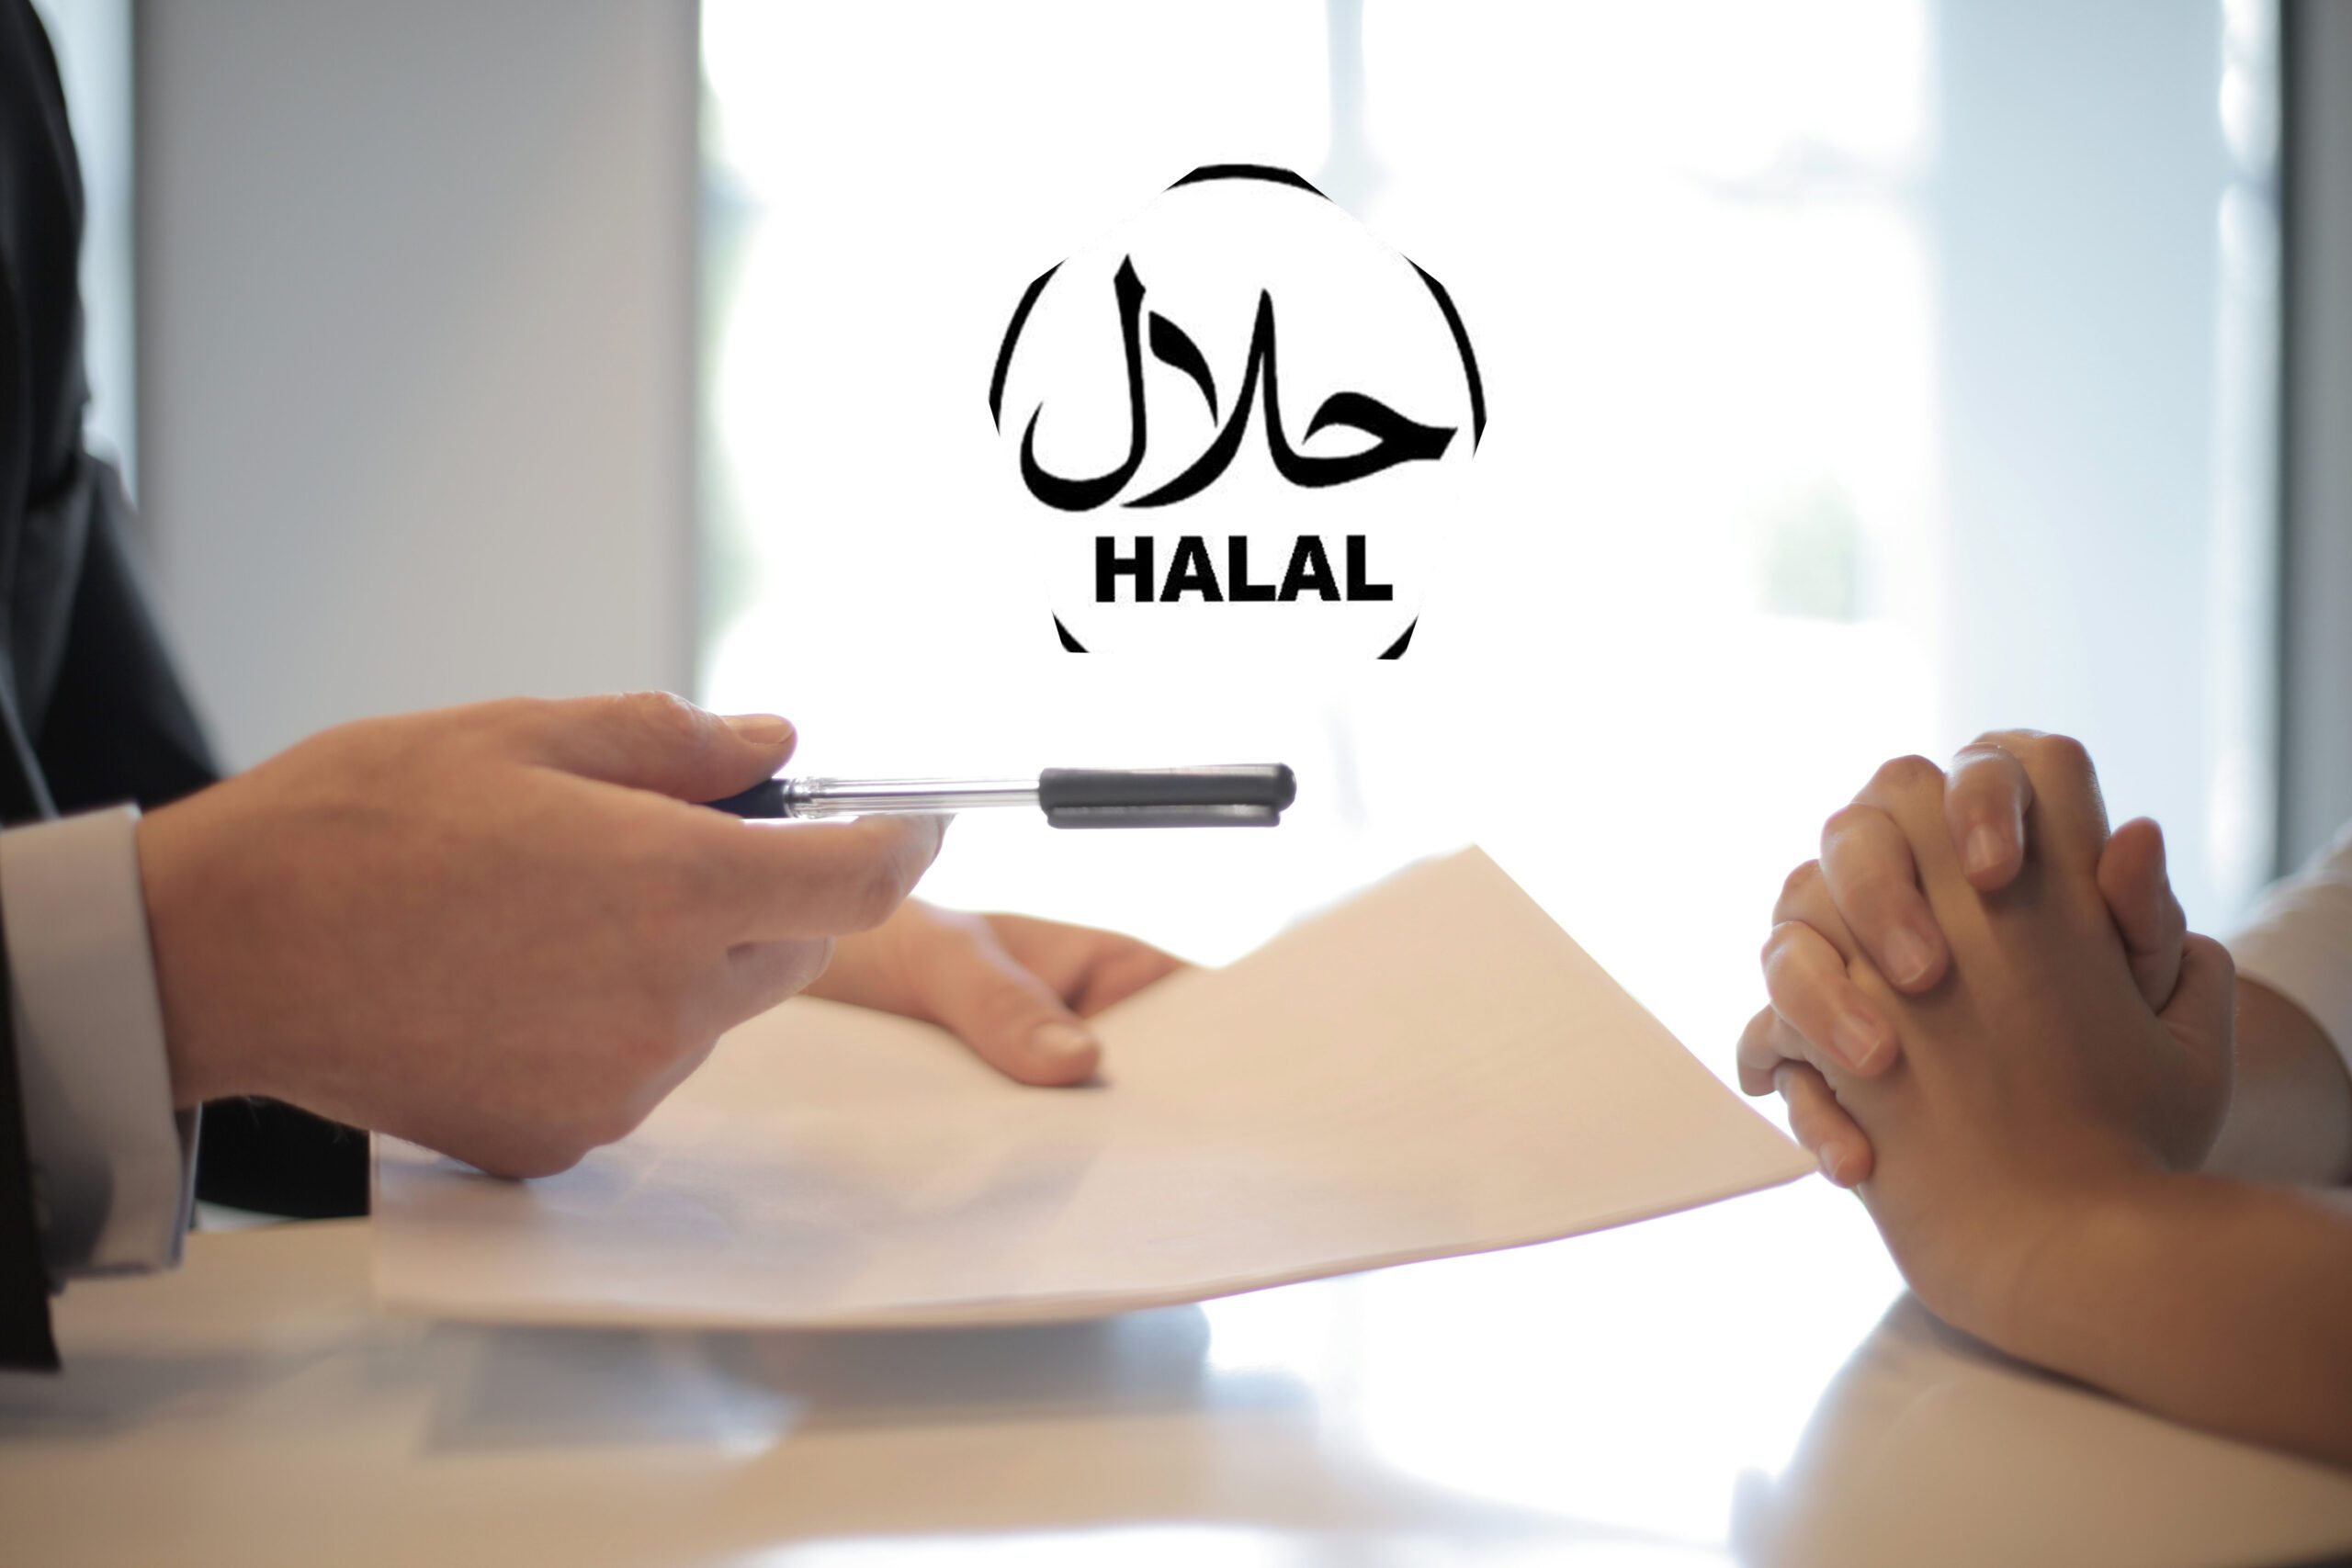 6 Pinjaman Online Syariah Paling Berpengaruh, Dijamin Halal!